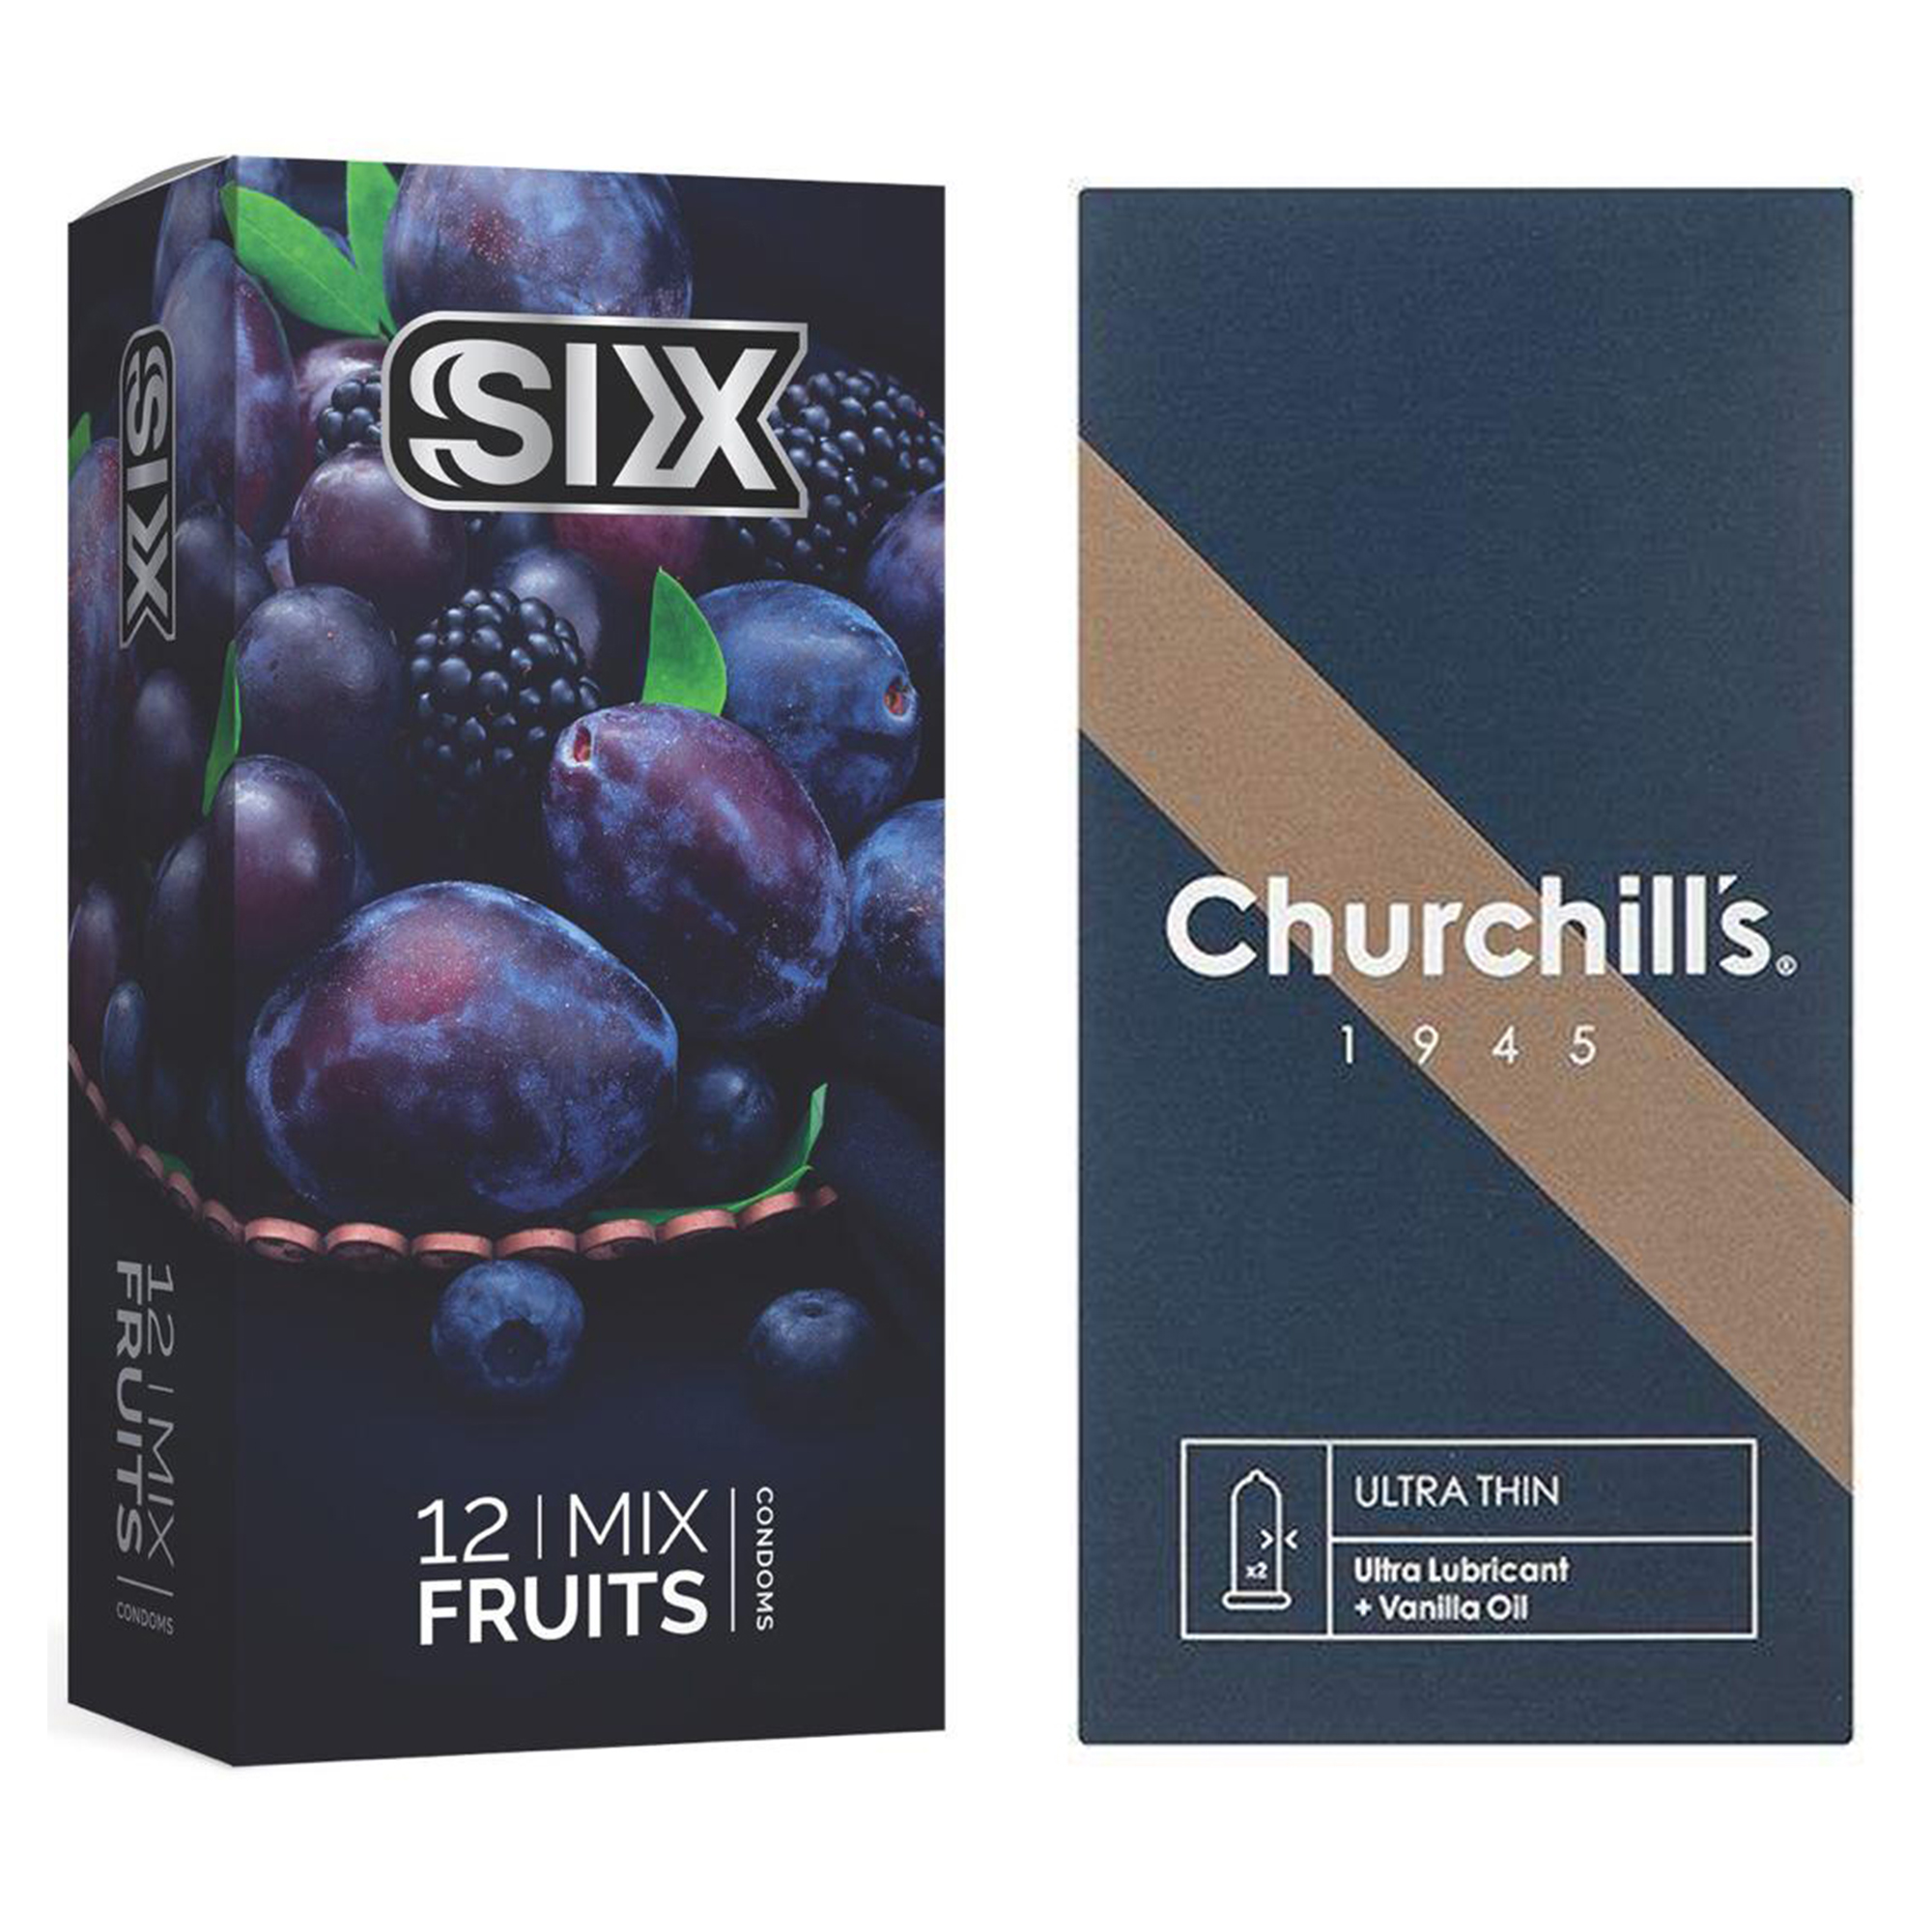 نکته خرید - قیمت روز کاندوم چرچیلز مدل Ultra Thin بسته 12 عددی به همراه کاندوم سیکس مدل میوه ای بسته 12 عددی خرید